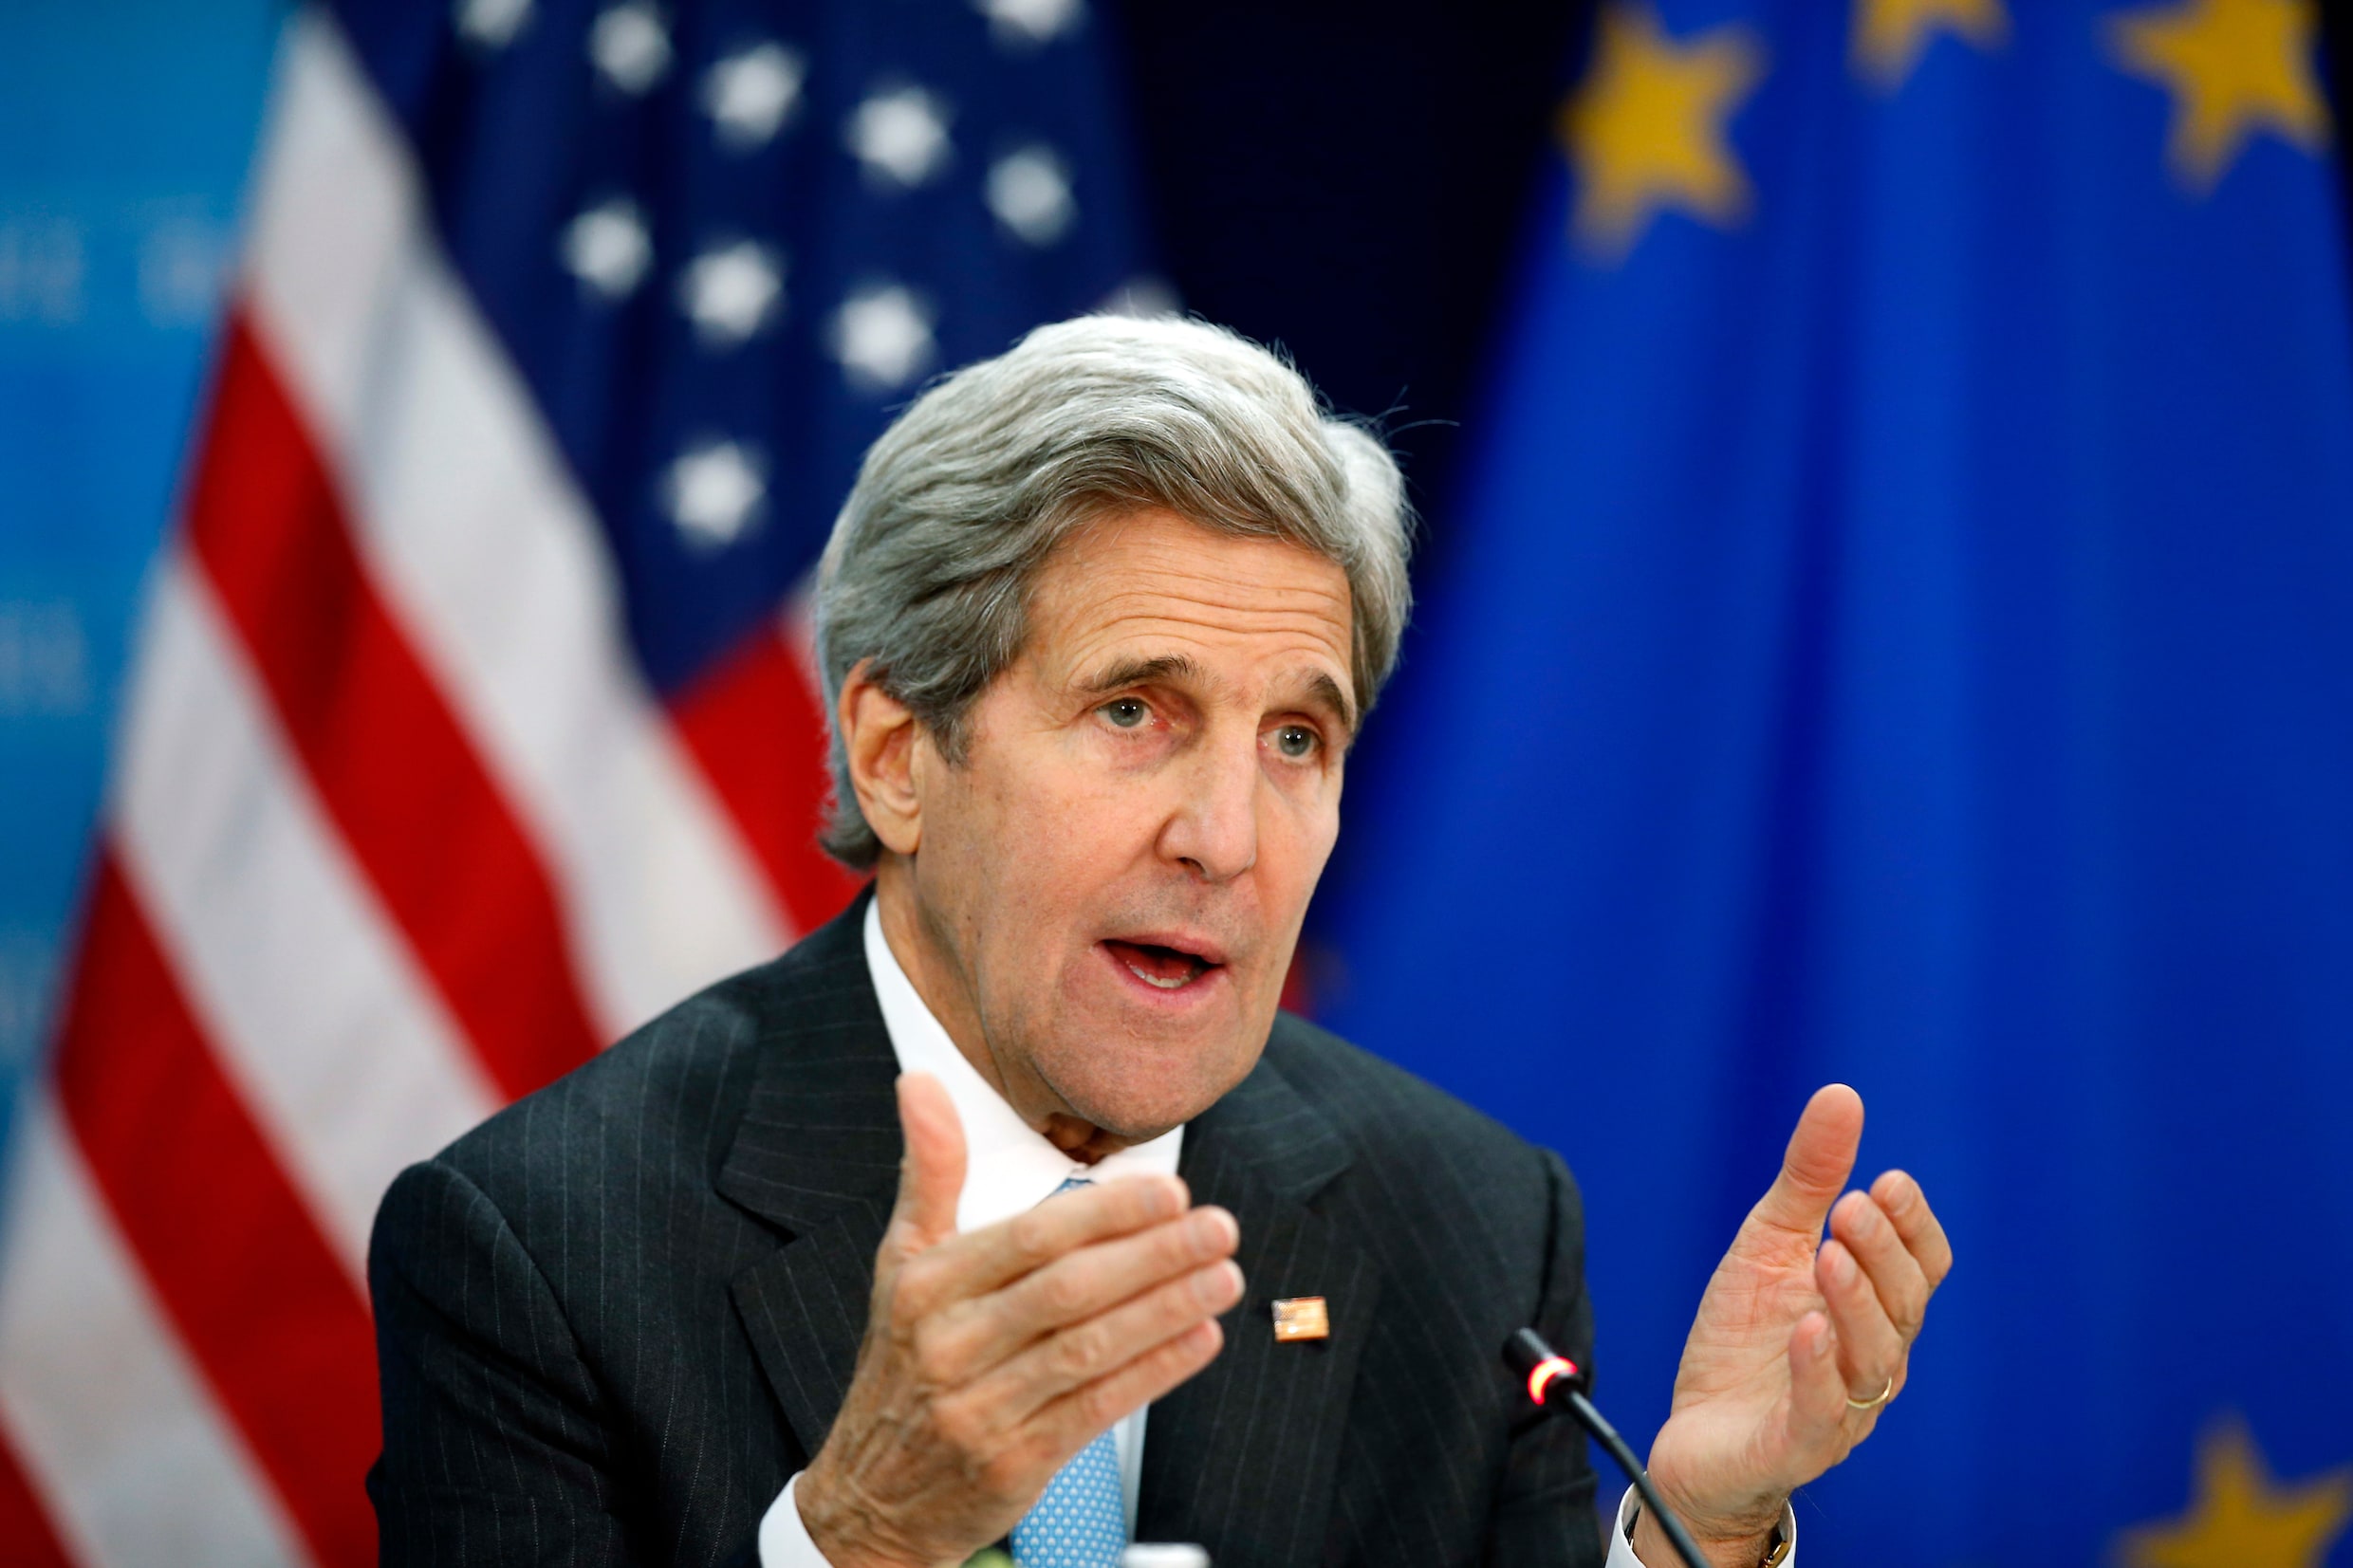 Kerry volgende week naar Parijs en Londen om te praten over Syrië